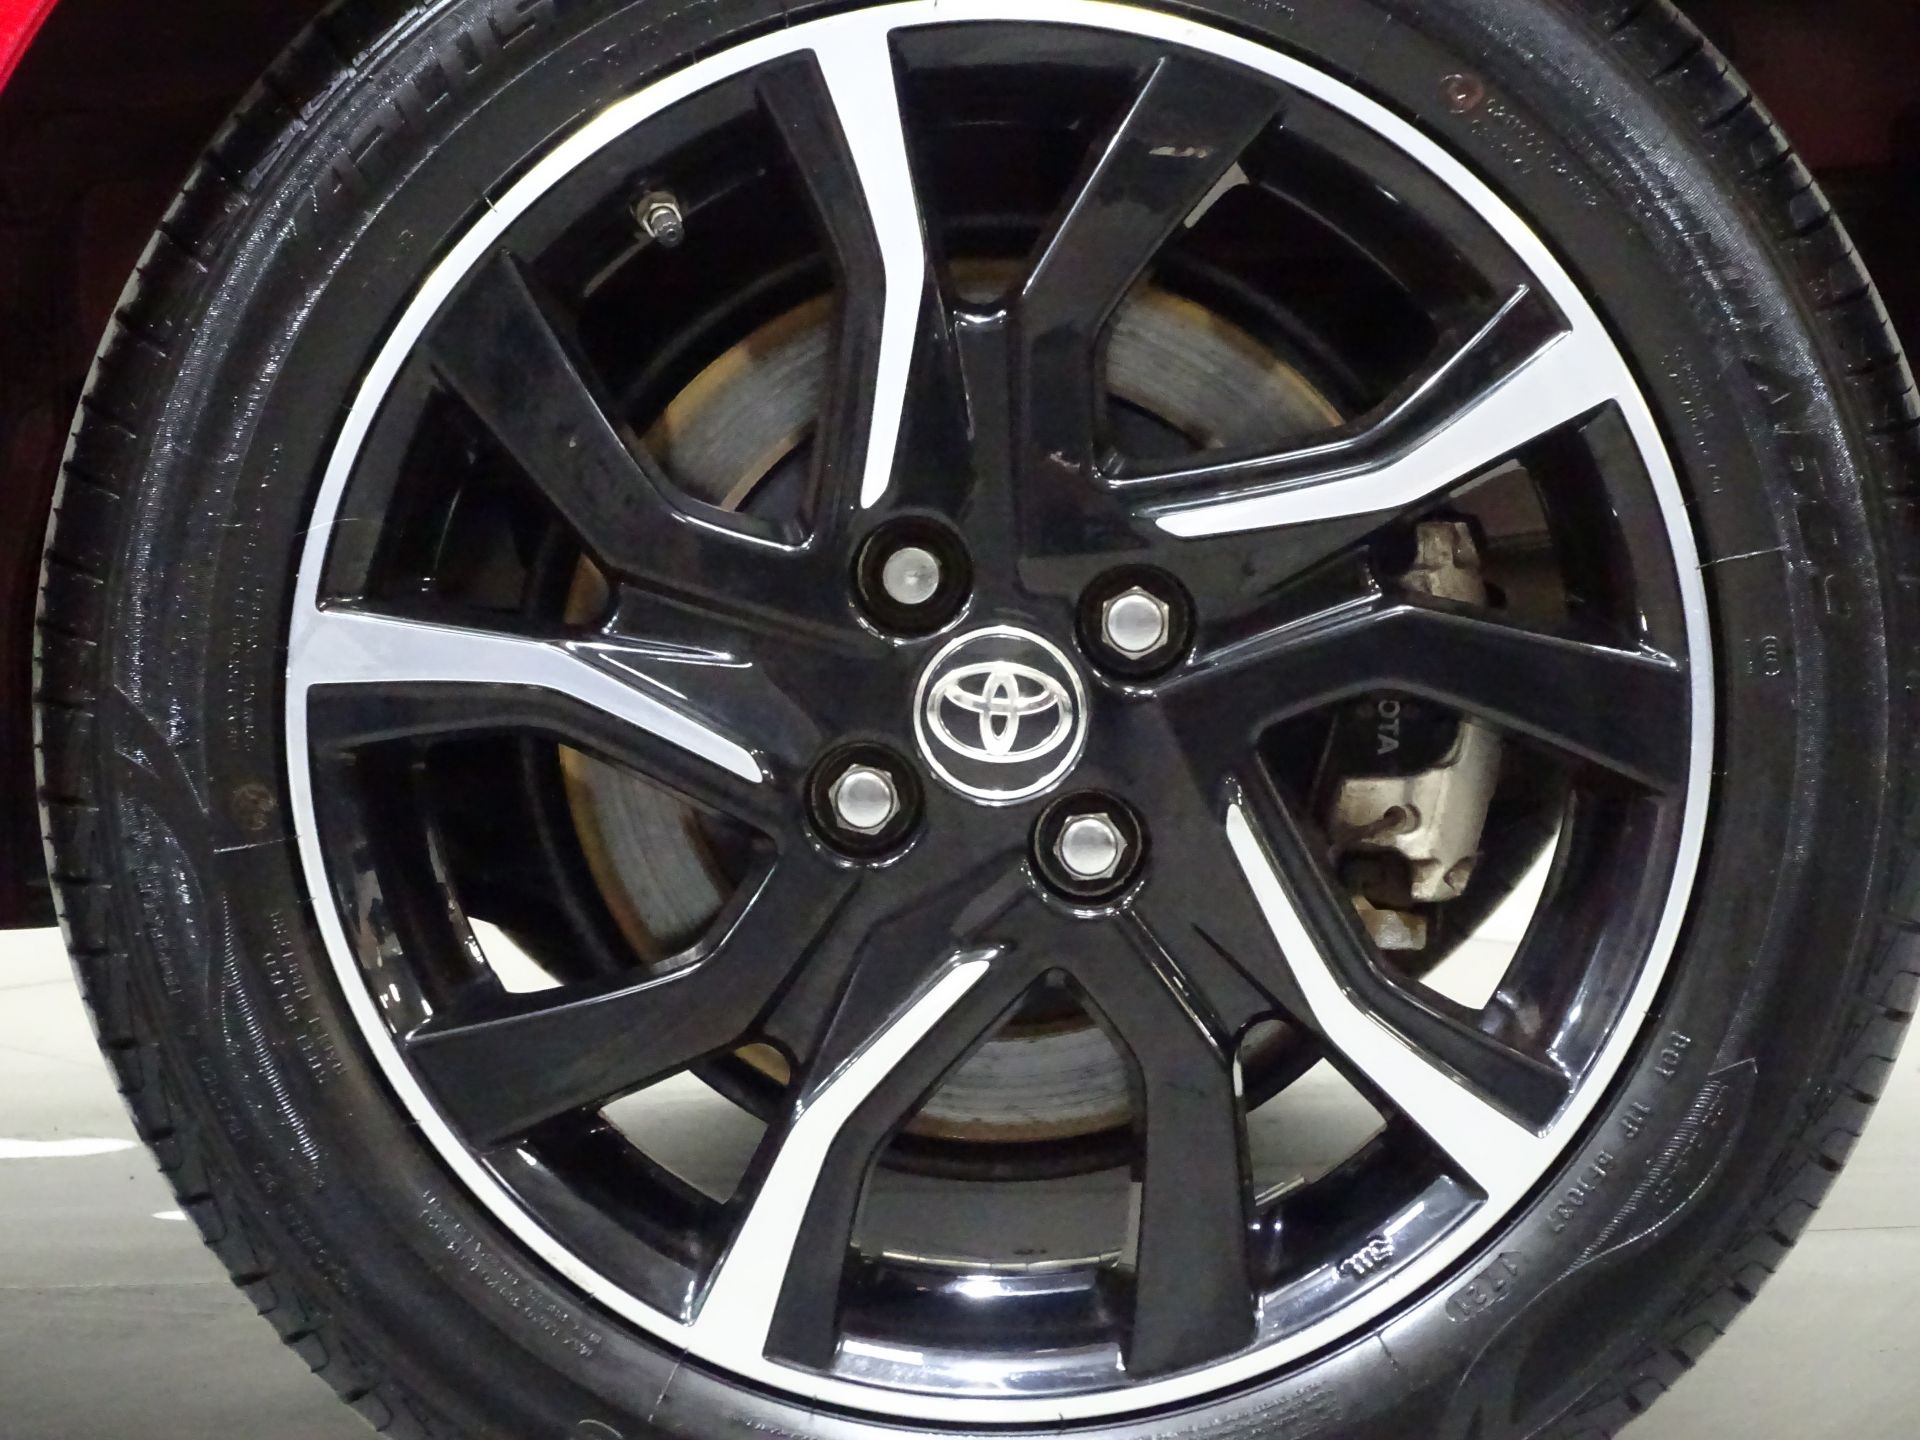 Toyota Yaris 1.5 Hybrid Feel